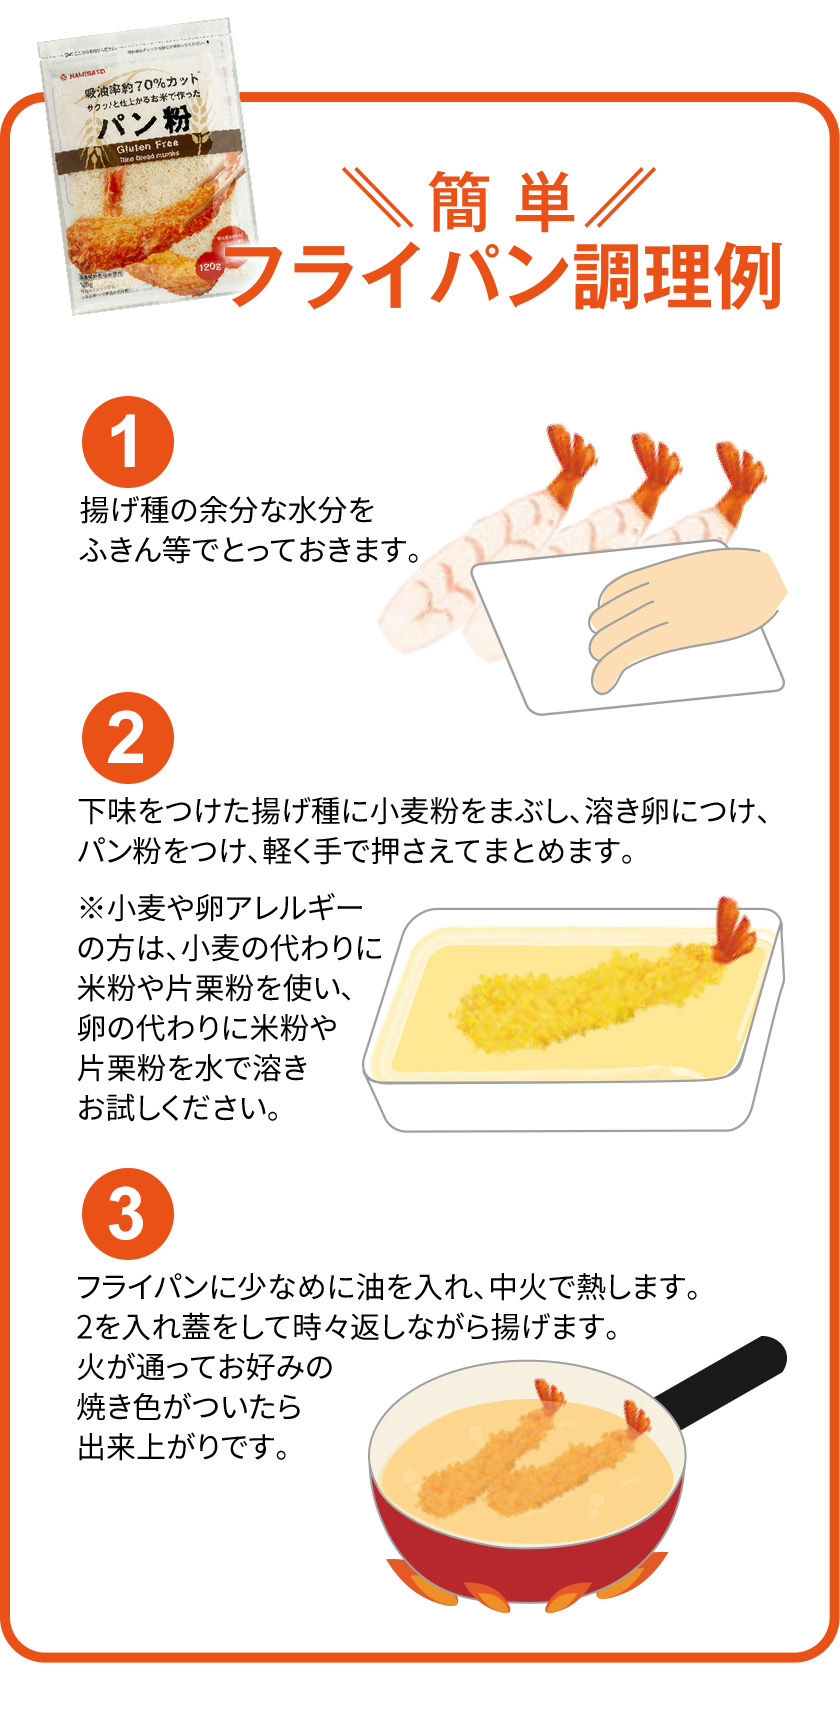 パン粉 グルテンフリー お米のパン粉 120g×4袋 国産 米粉 細かい ヘルシー :nsopk004:SUPER FOODS JAPAN - 通販  - Yahoo!ショッピング